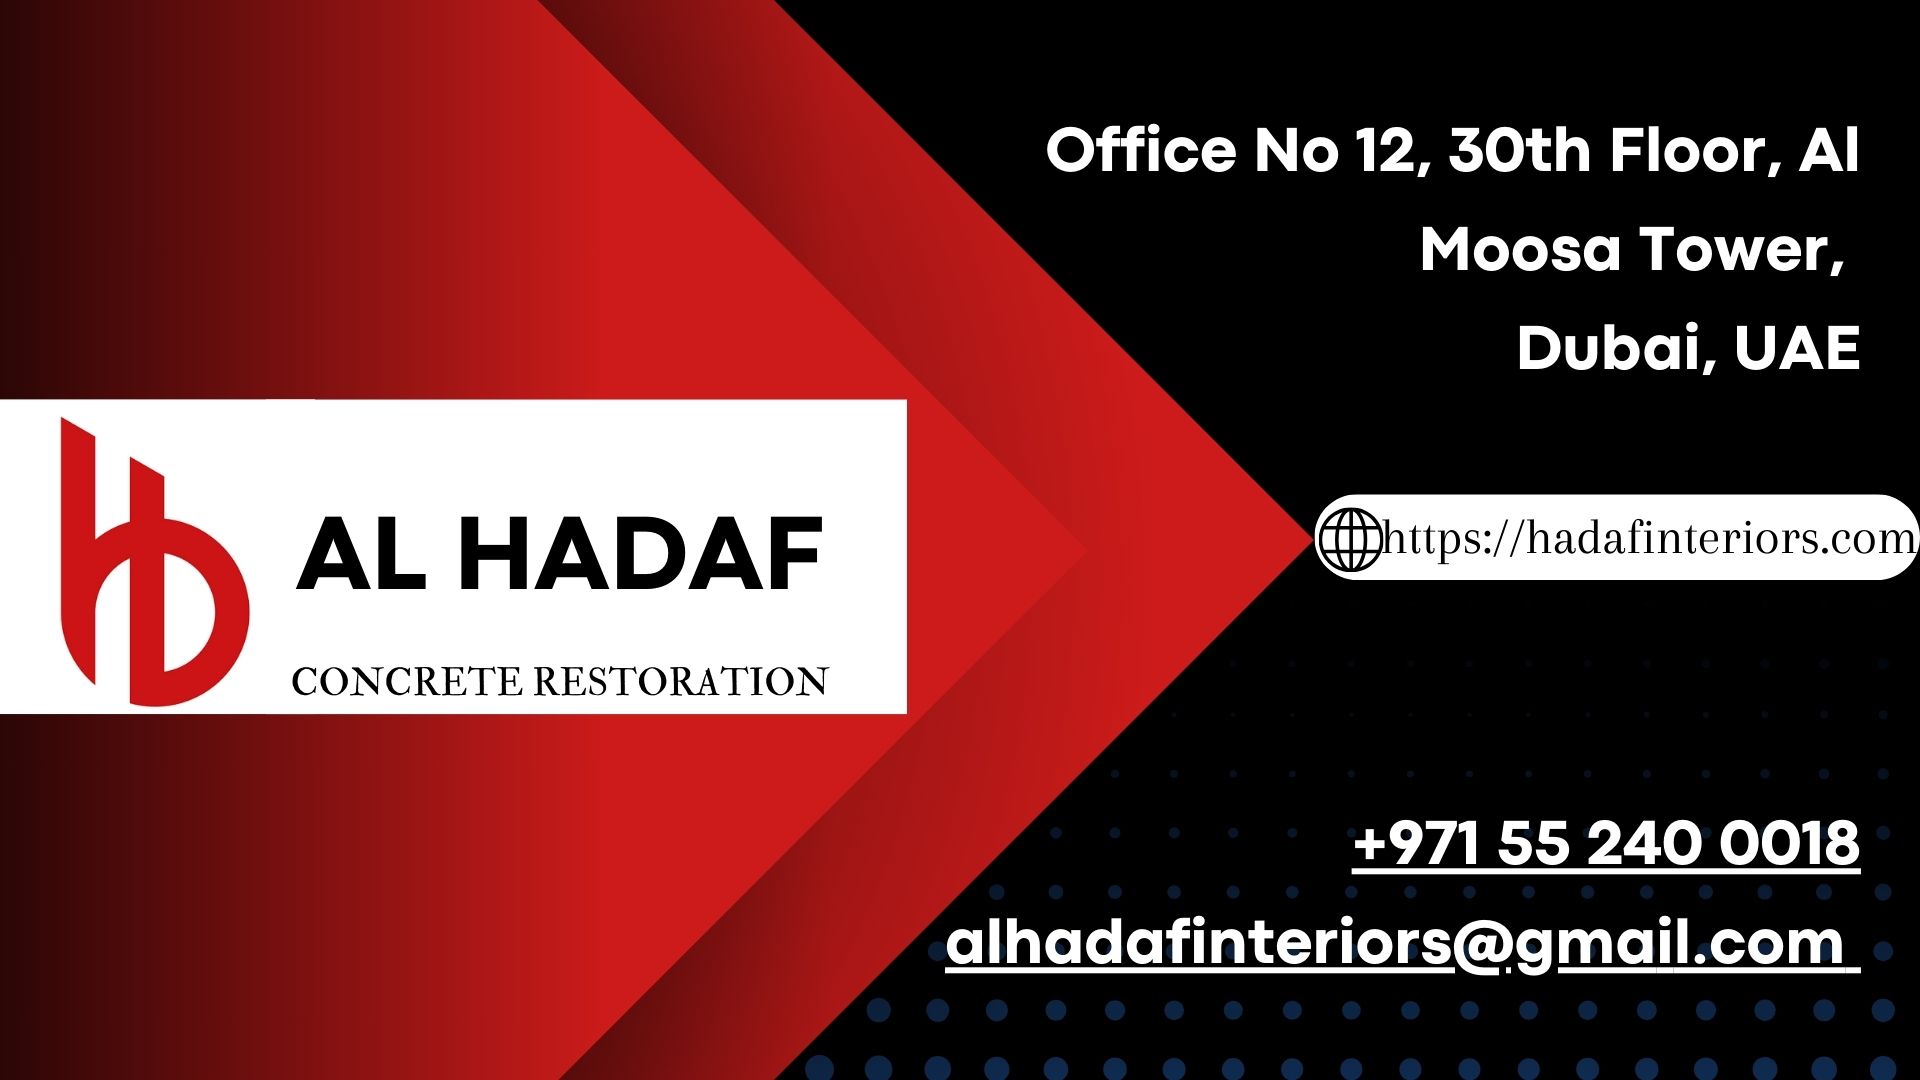 AL Hadaf Concrete Restoration Company in Dubai